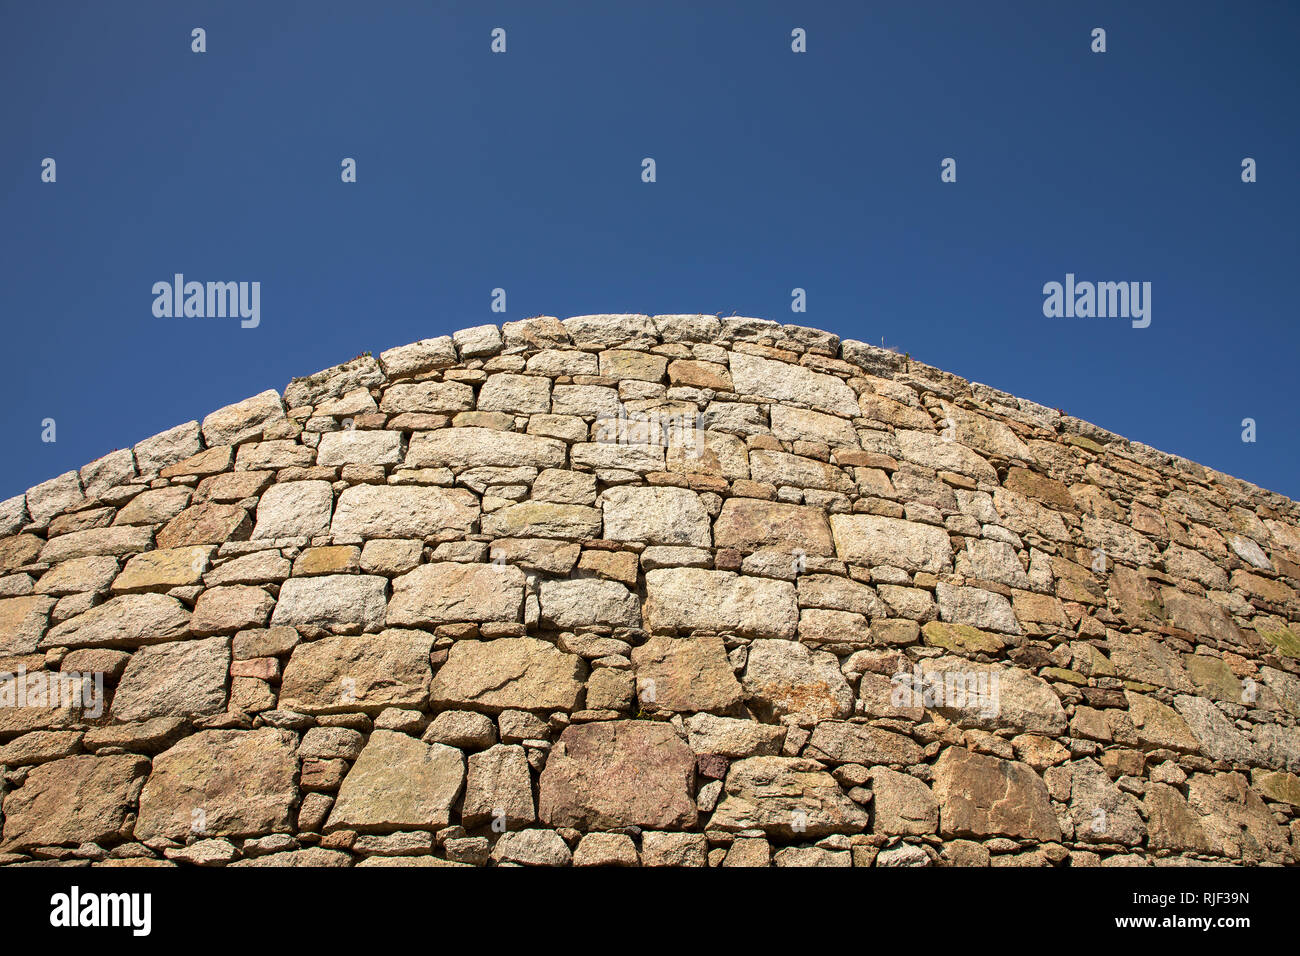 Exemples de pierres fines à victorien Chateau L'Etdm sur Alderney, Channel Islands. De grandes zones de ciel bleu disponible pour copier l'espace. Banque D'Images